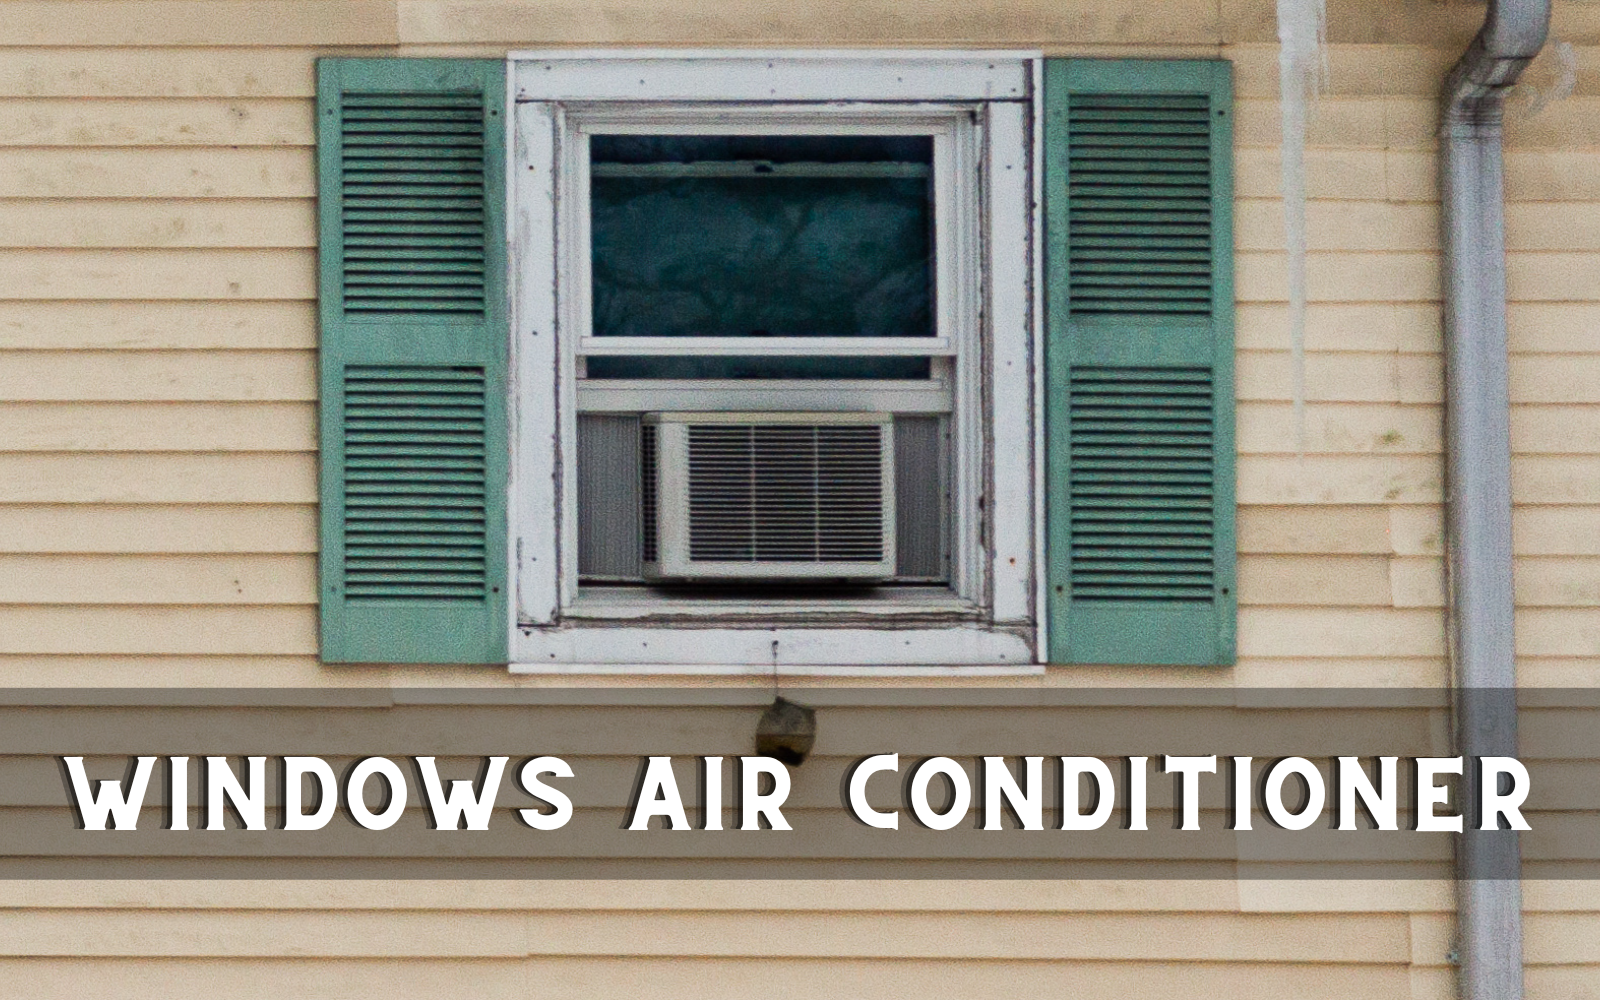 Windows AIR CONDITIONER